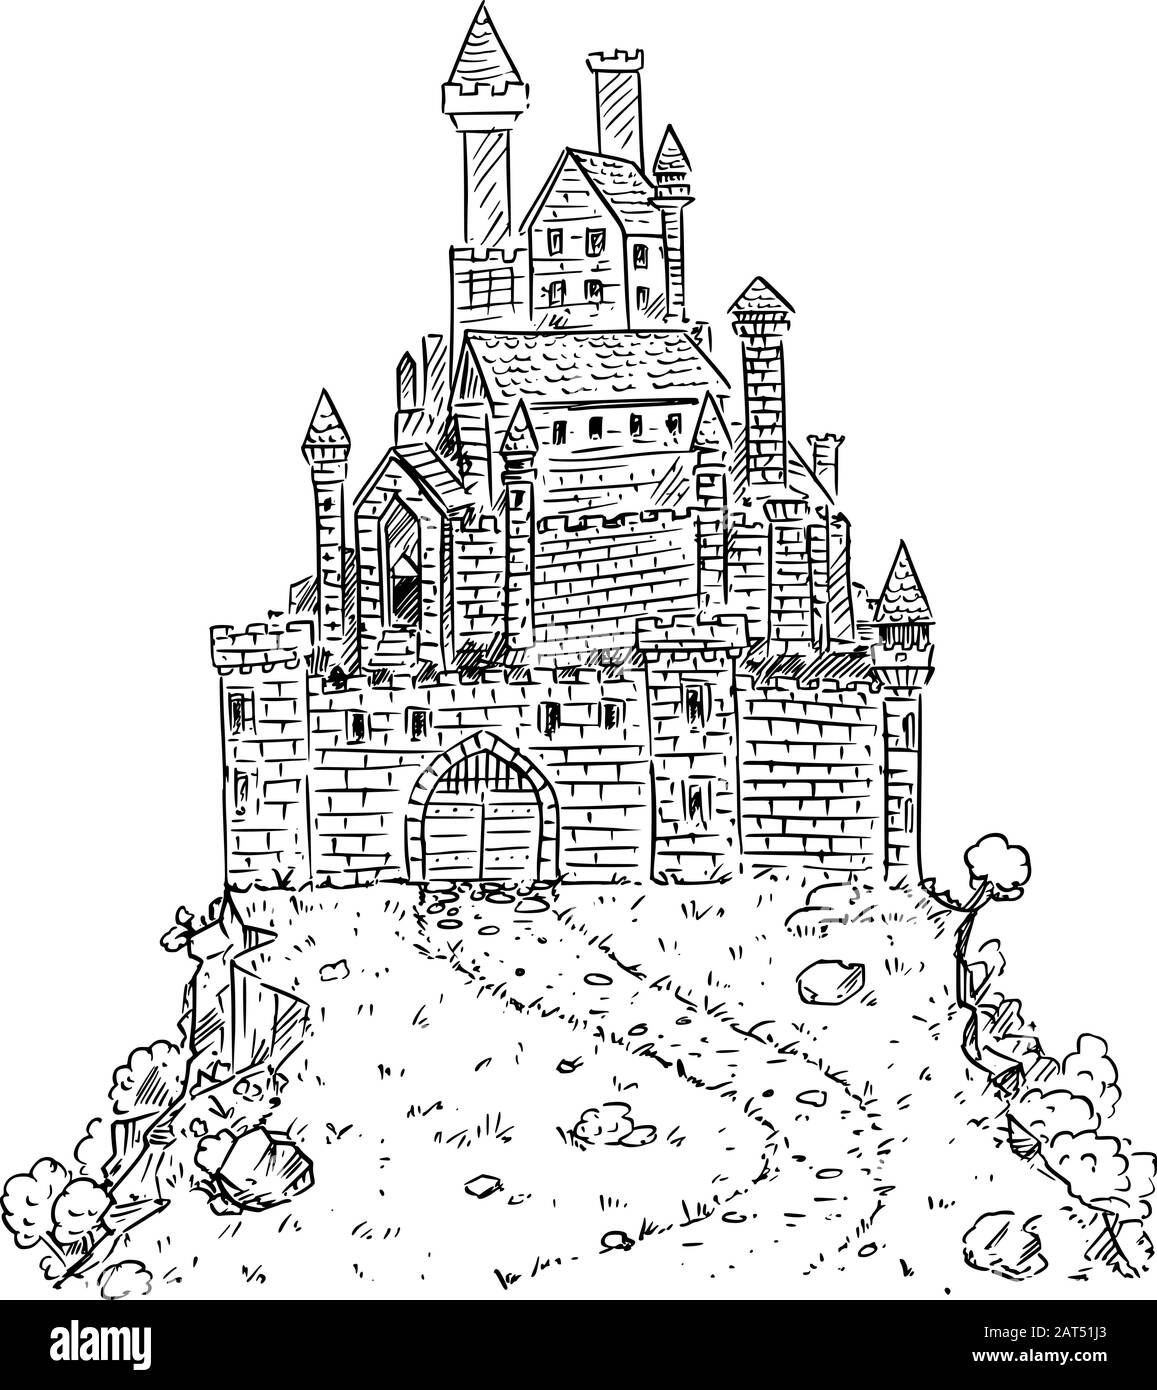 Illustration vectorielle noire et blanche de dessins animés ou dessin d'un château médiéval ou de fantaisie sur la colline. Illustration de Vecteur